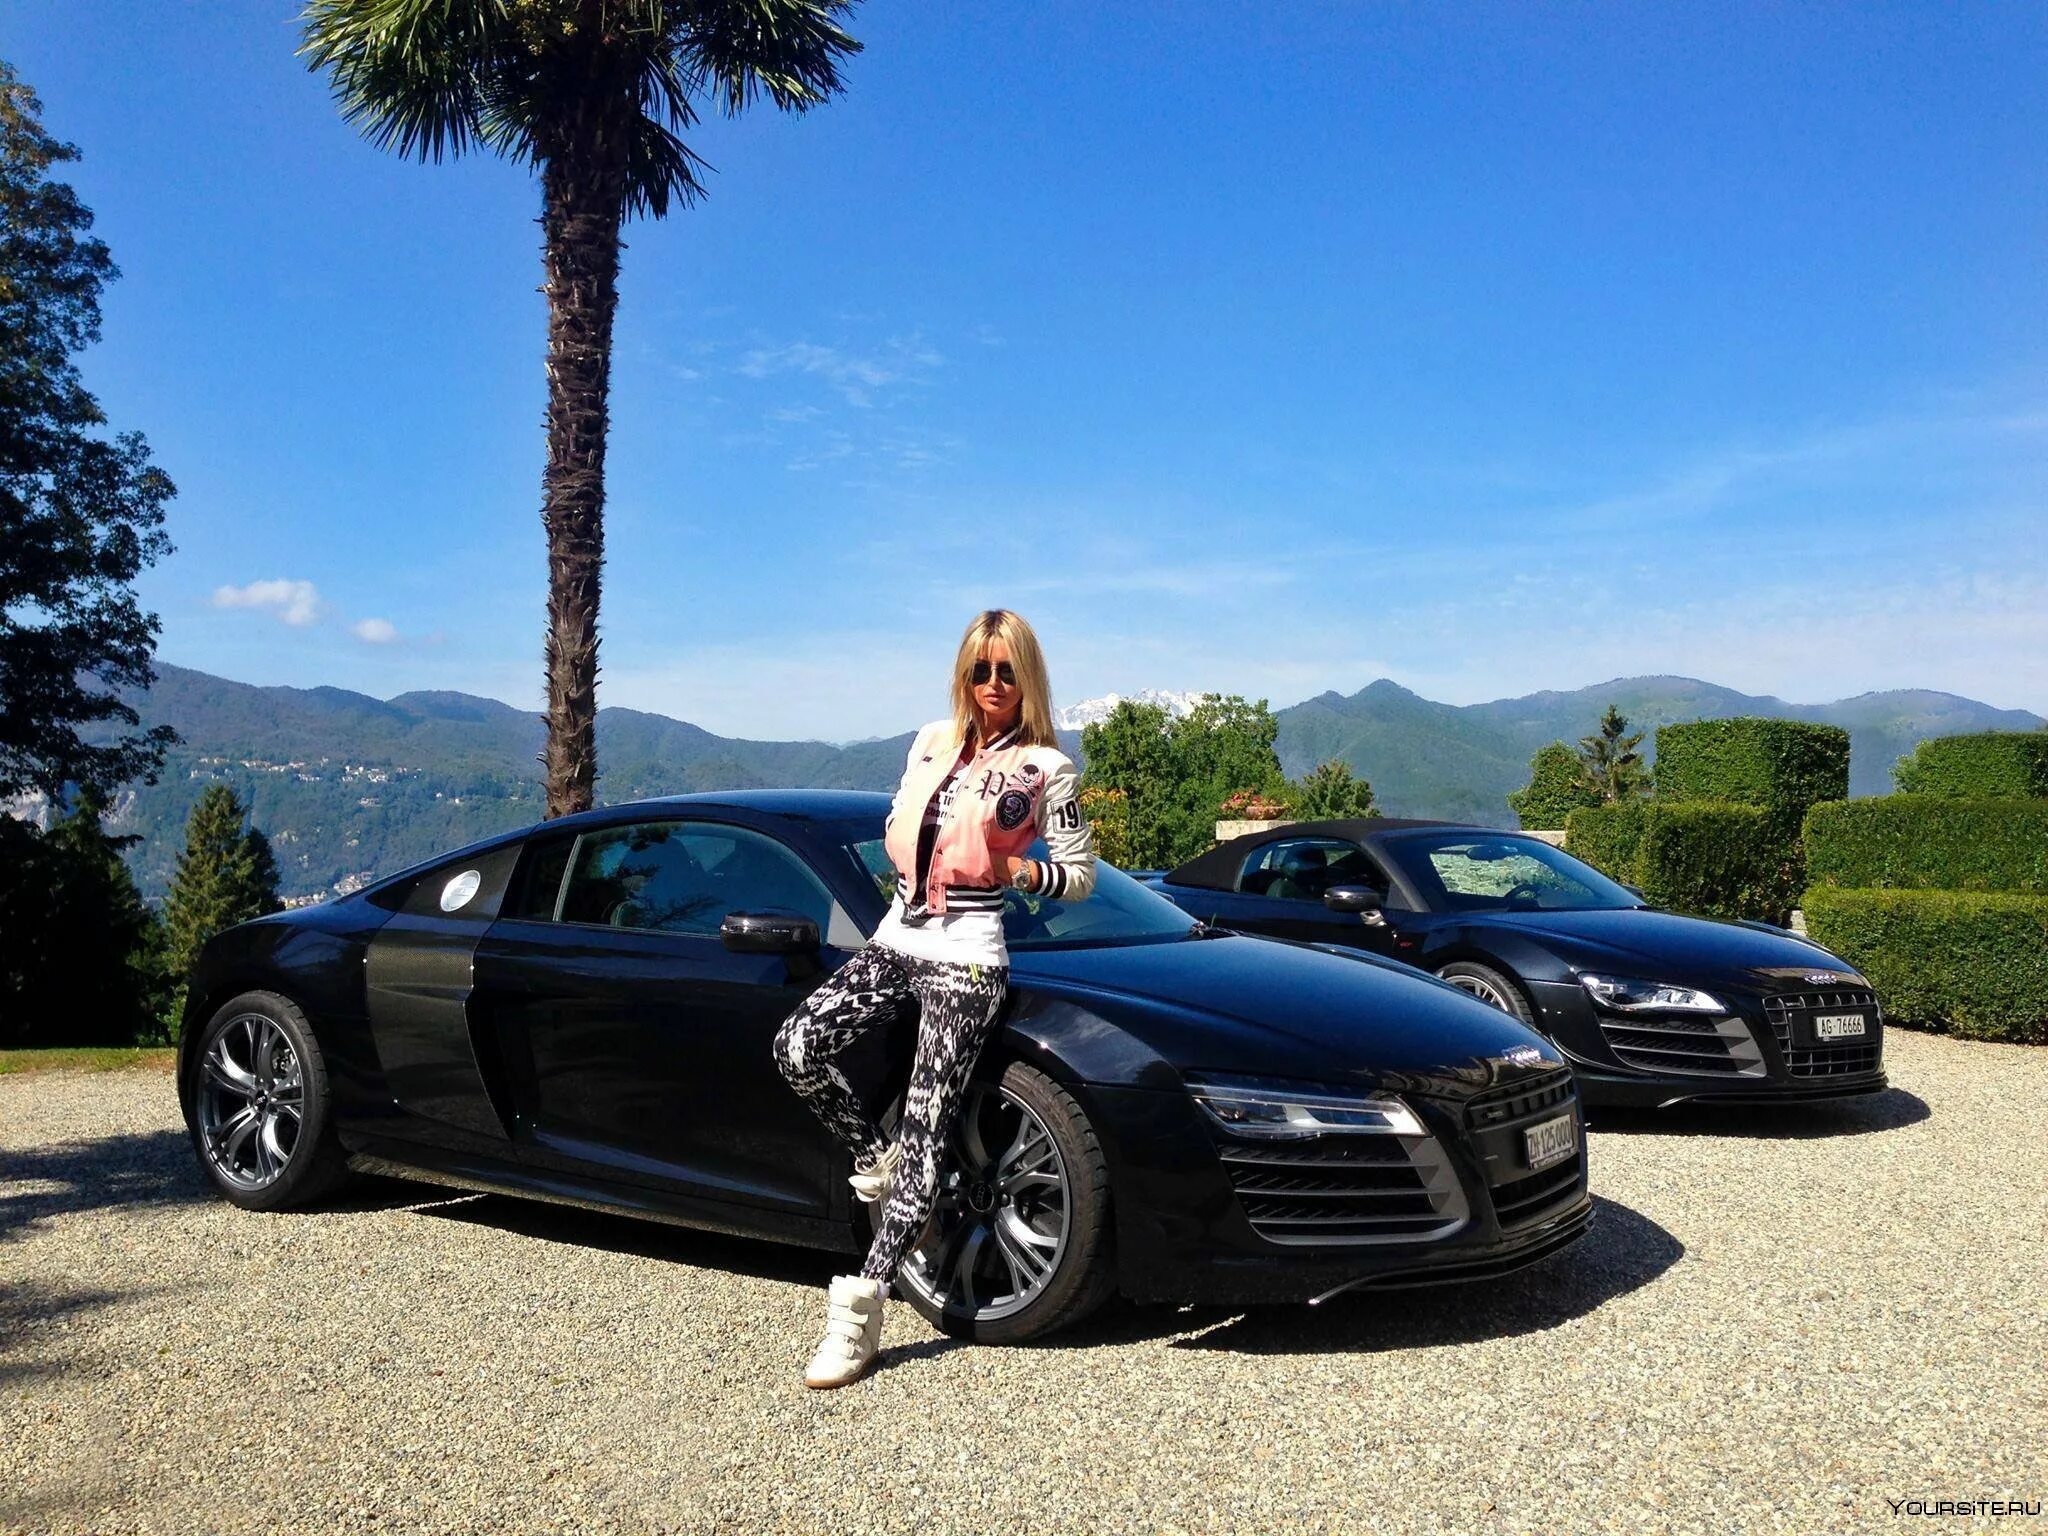 Фото на фоне машины. Блондинка возле машины. Богатая жизнь. Богатая девушка. Красивые фото на фоне машины.